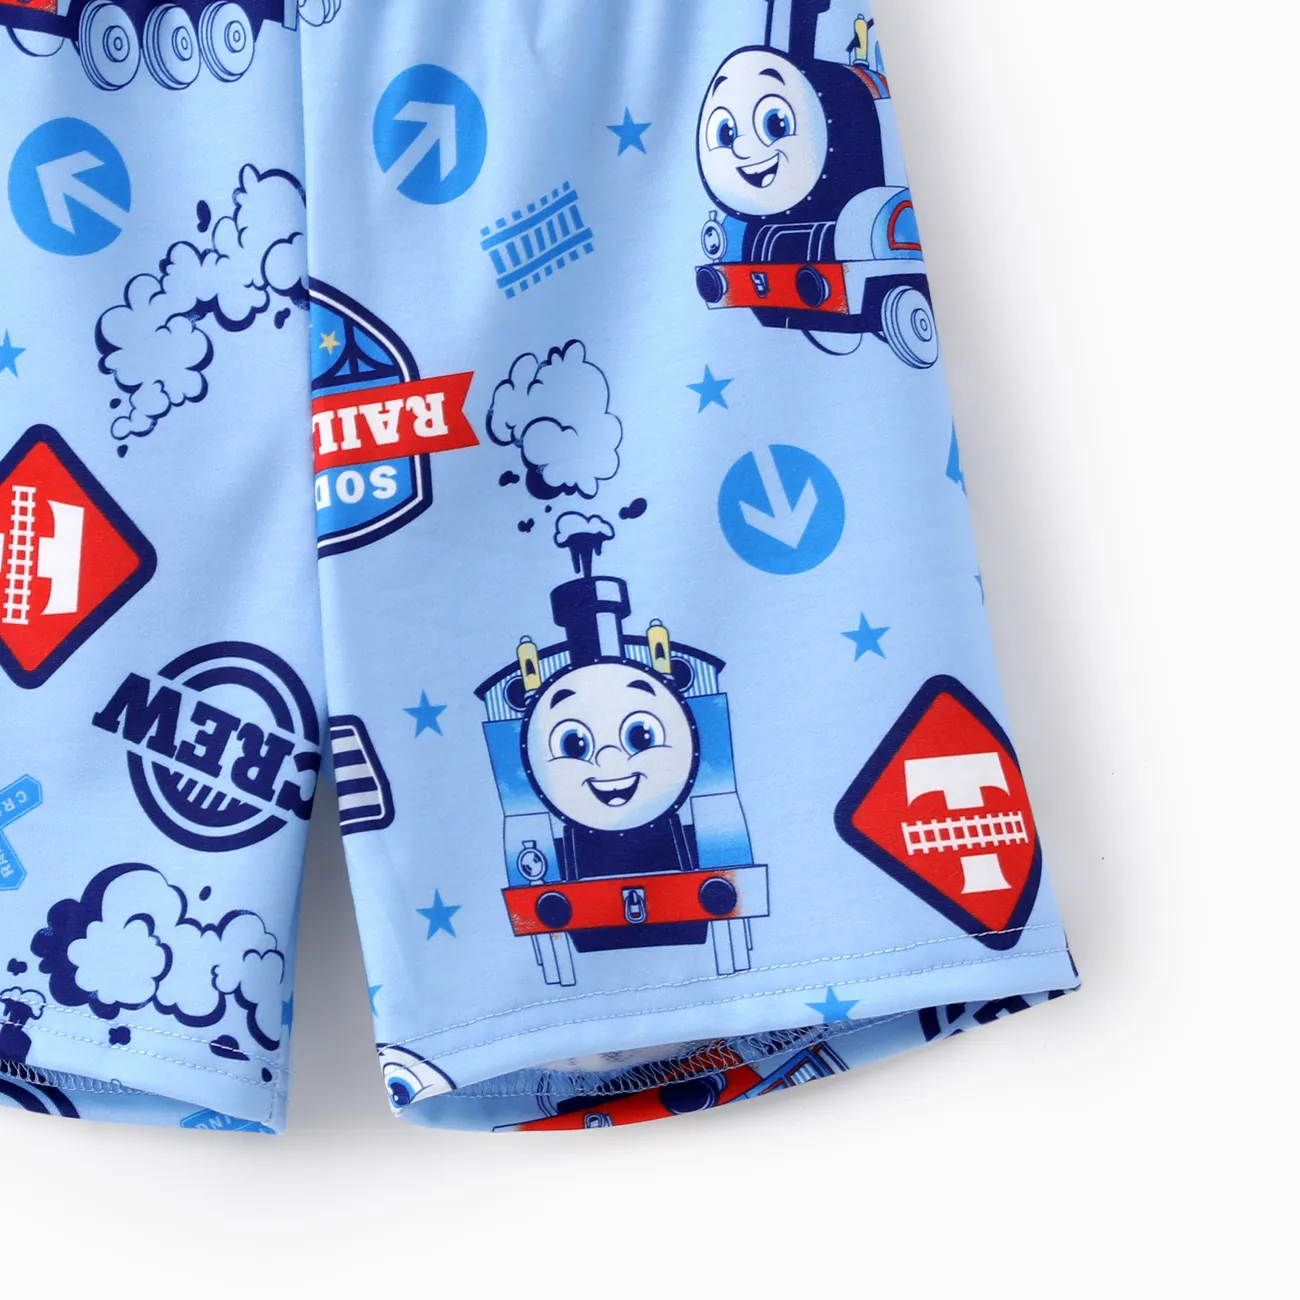 Thomas & Friends 2 unidades Criança Menino Costuras de tecido Infantil conjuntos de camisetas Bloco de Cor big image 1